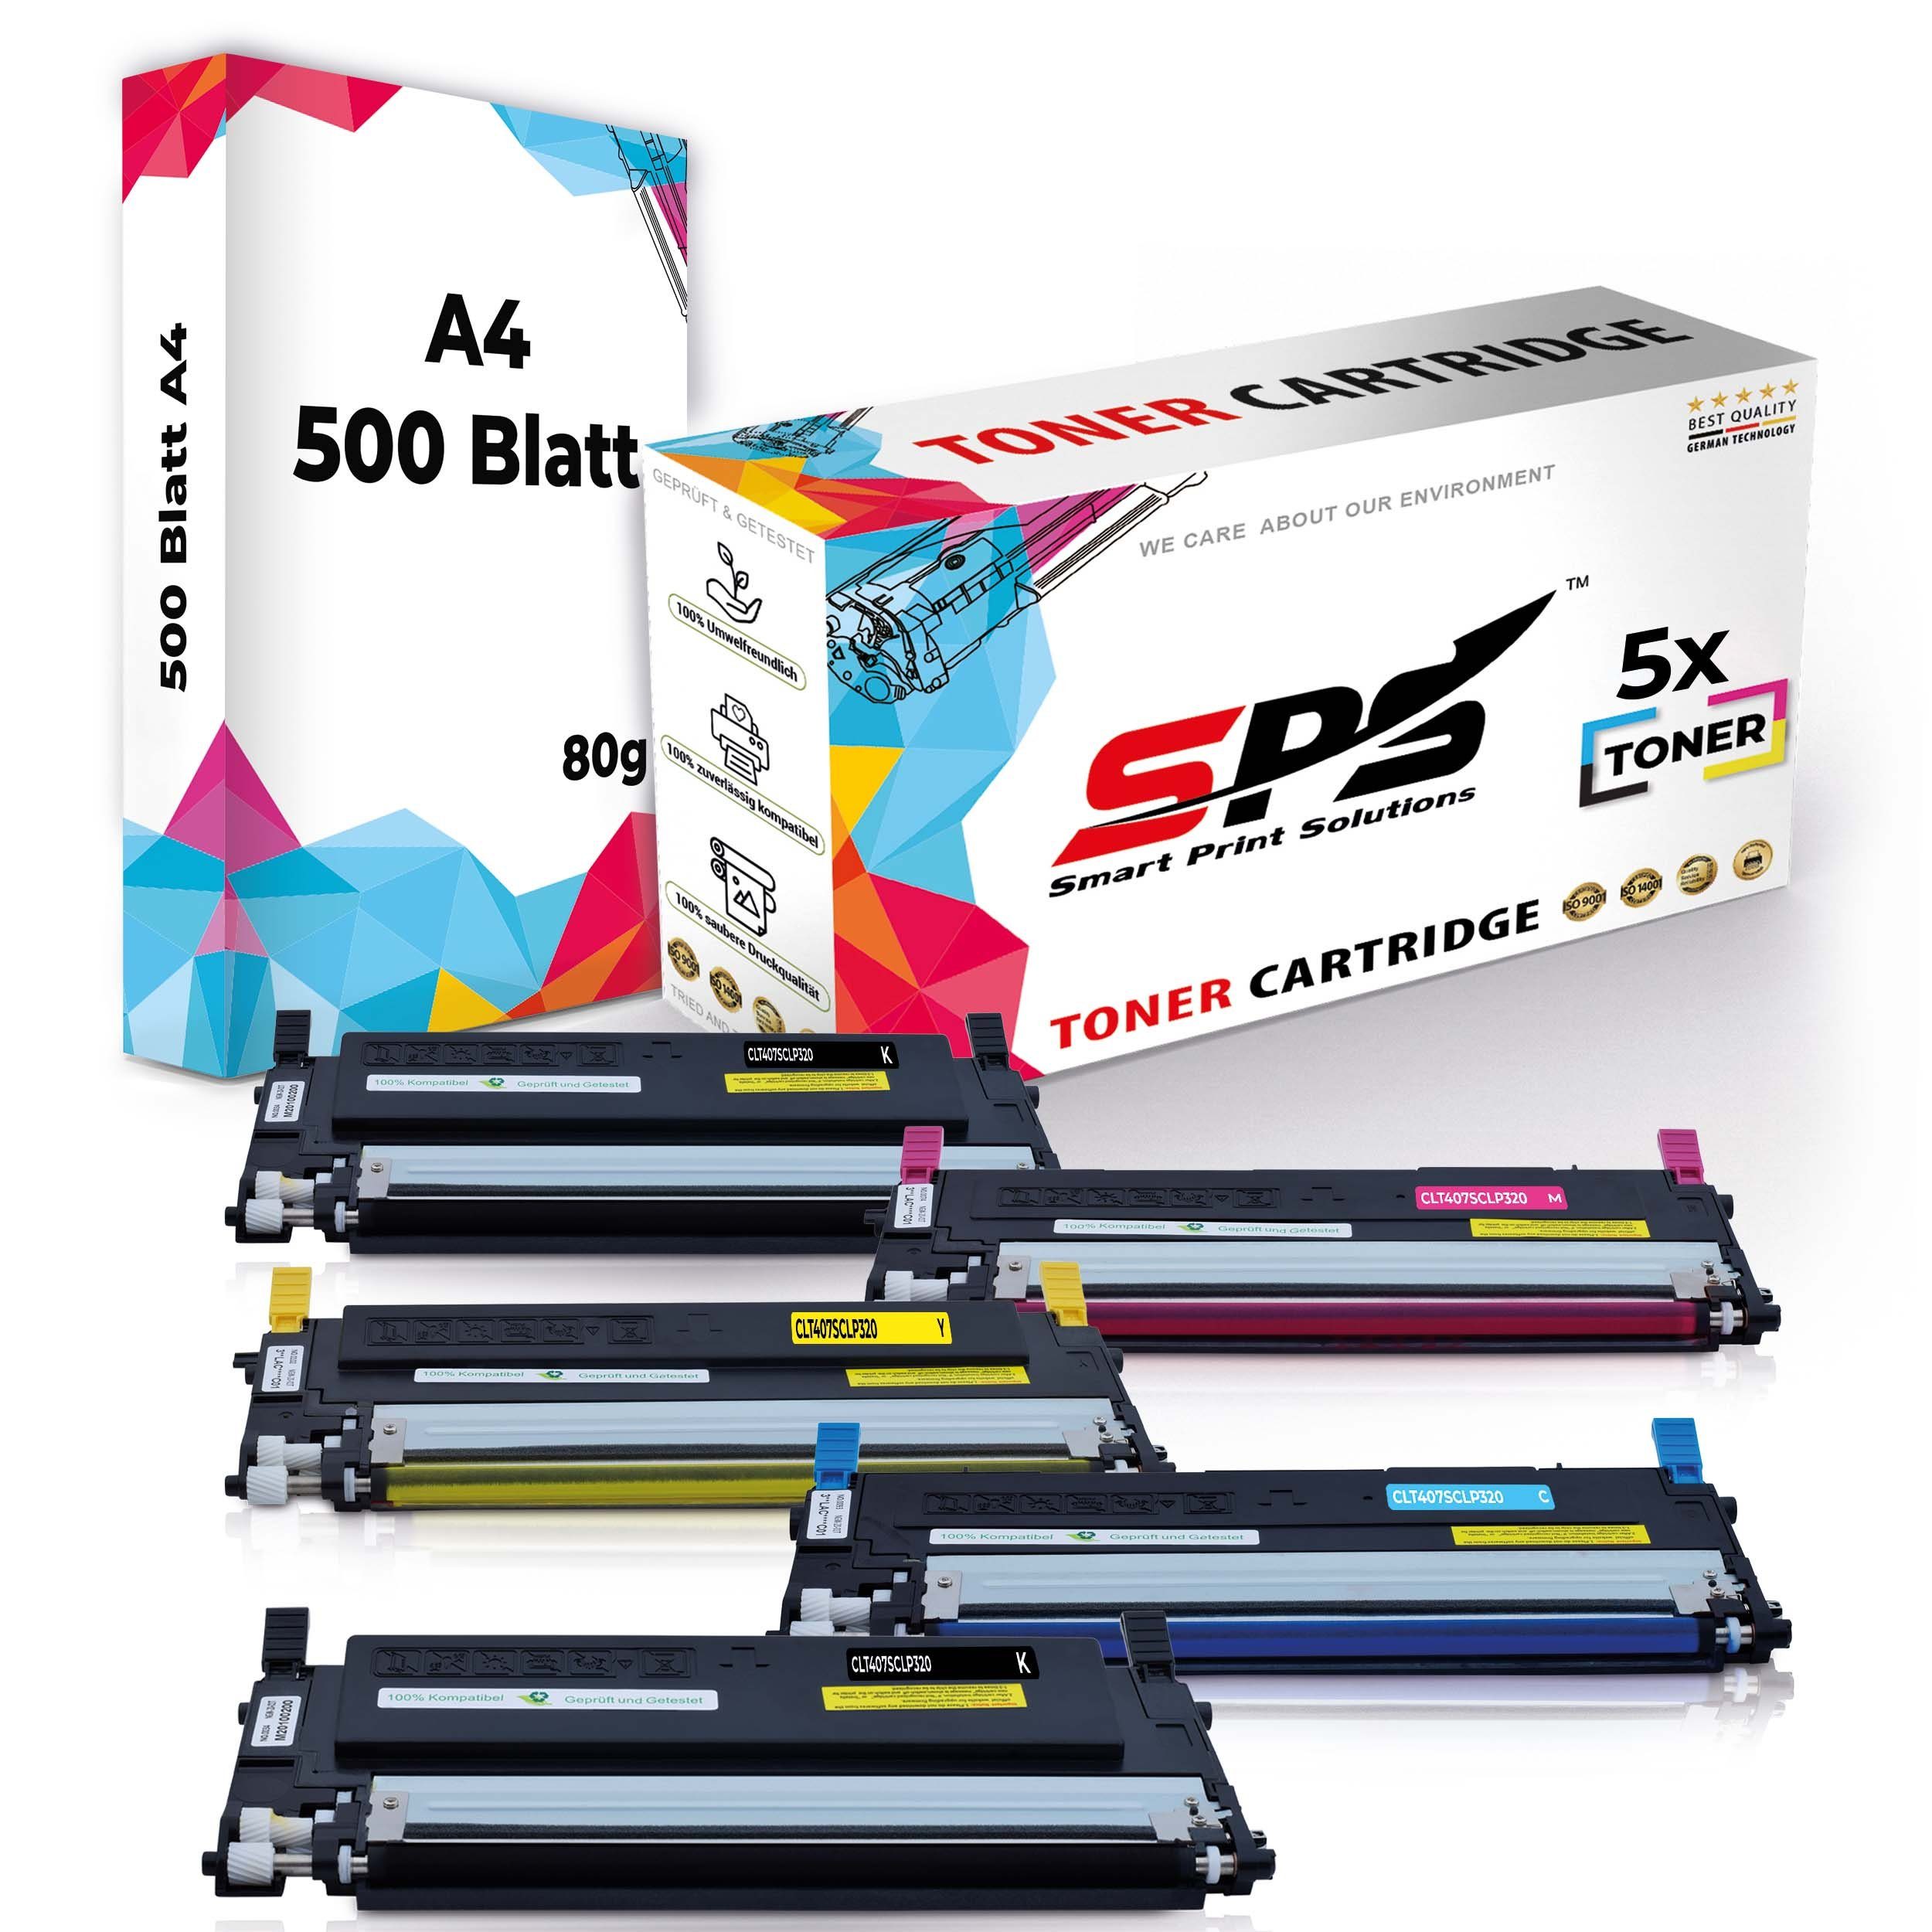 Druckerpapier) Multipack Kompatibel, 5x (6er Toner,1x Set A4 A4 5x Pack, Druckerpapier Tonerkartusche SPS +